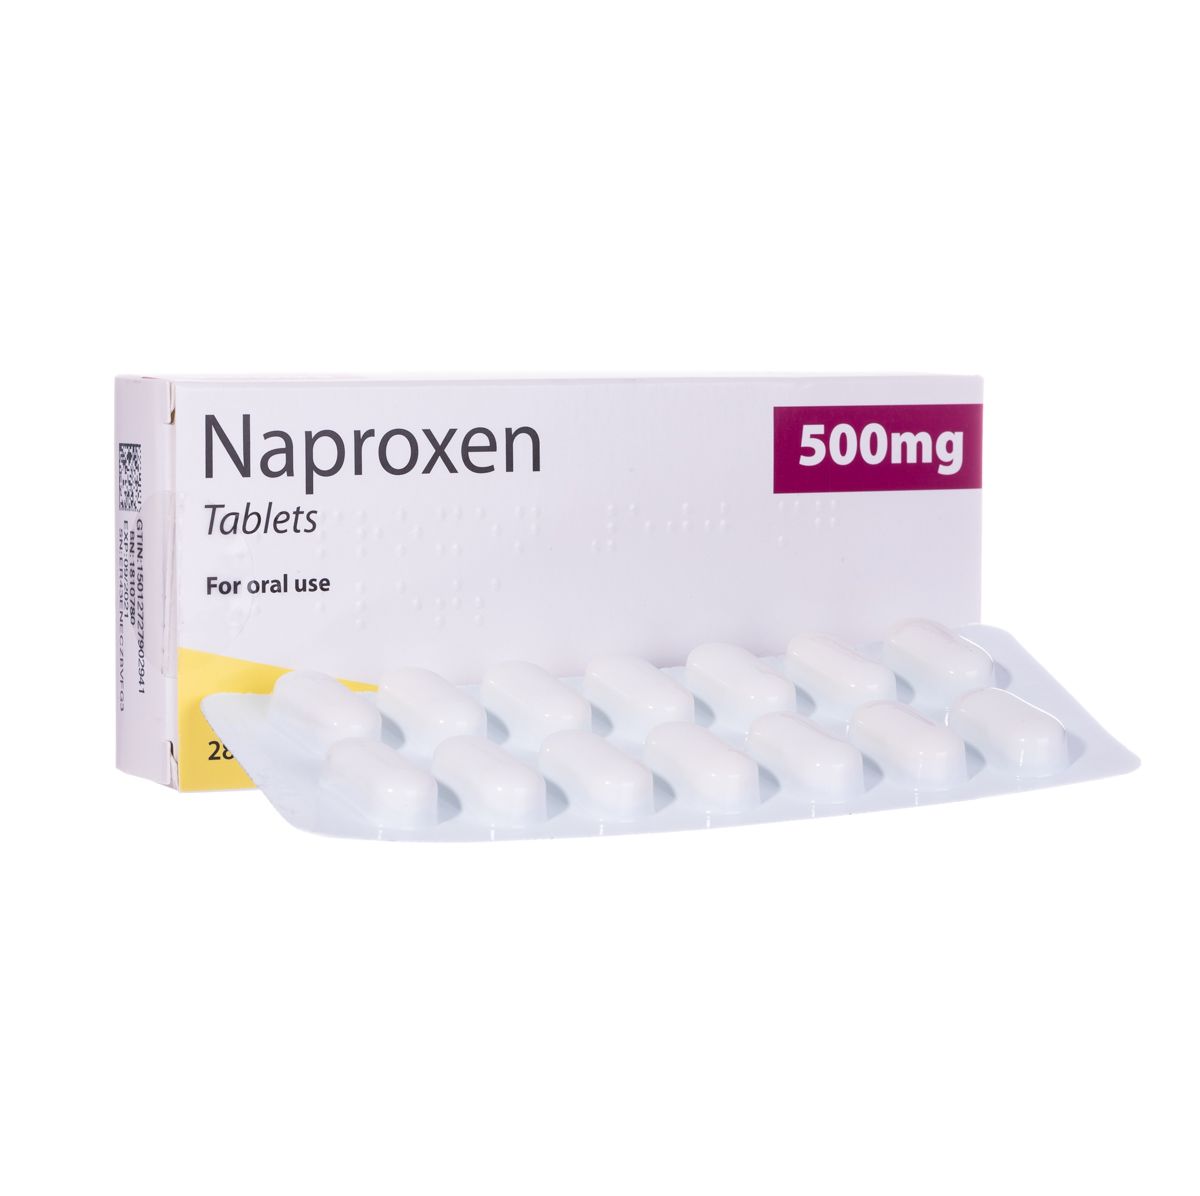 Naproxen Adalah Obat Nyeri Yang Ditimbulkan Oleh Radang Sendi Dan Asam Urat